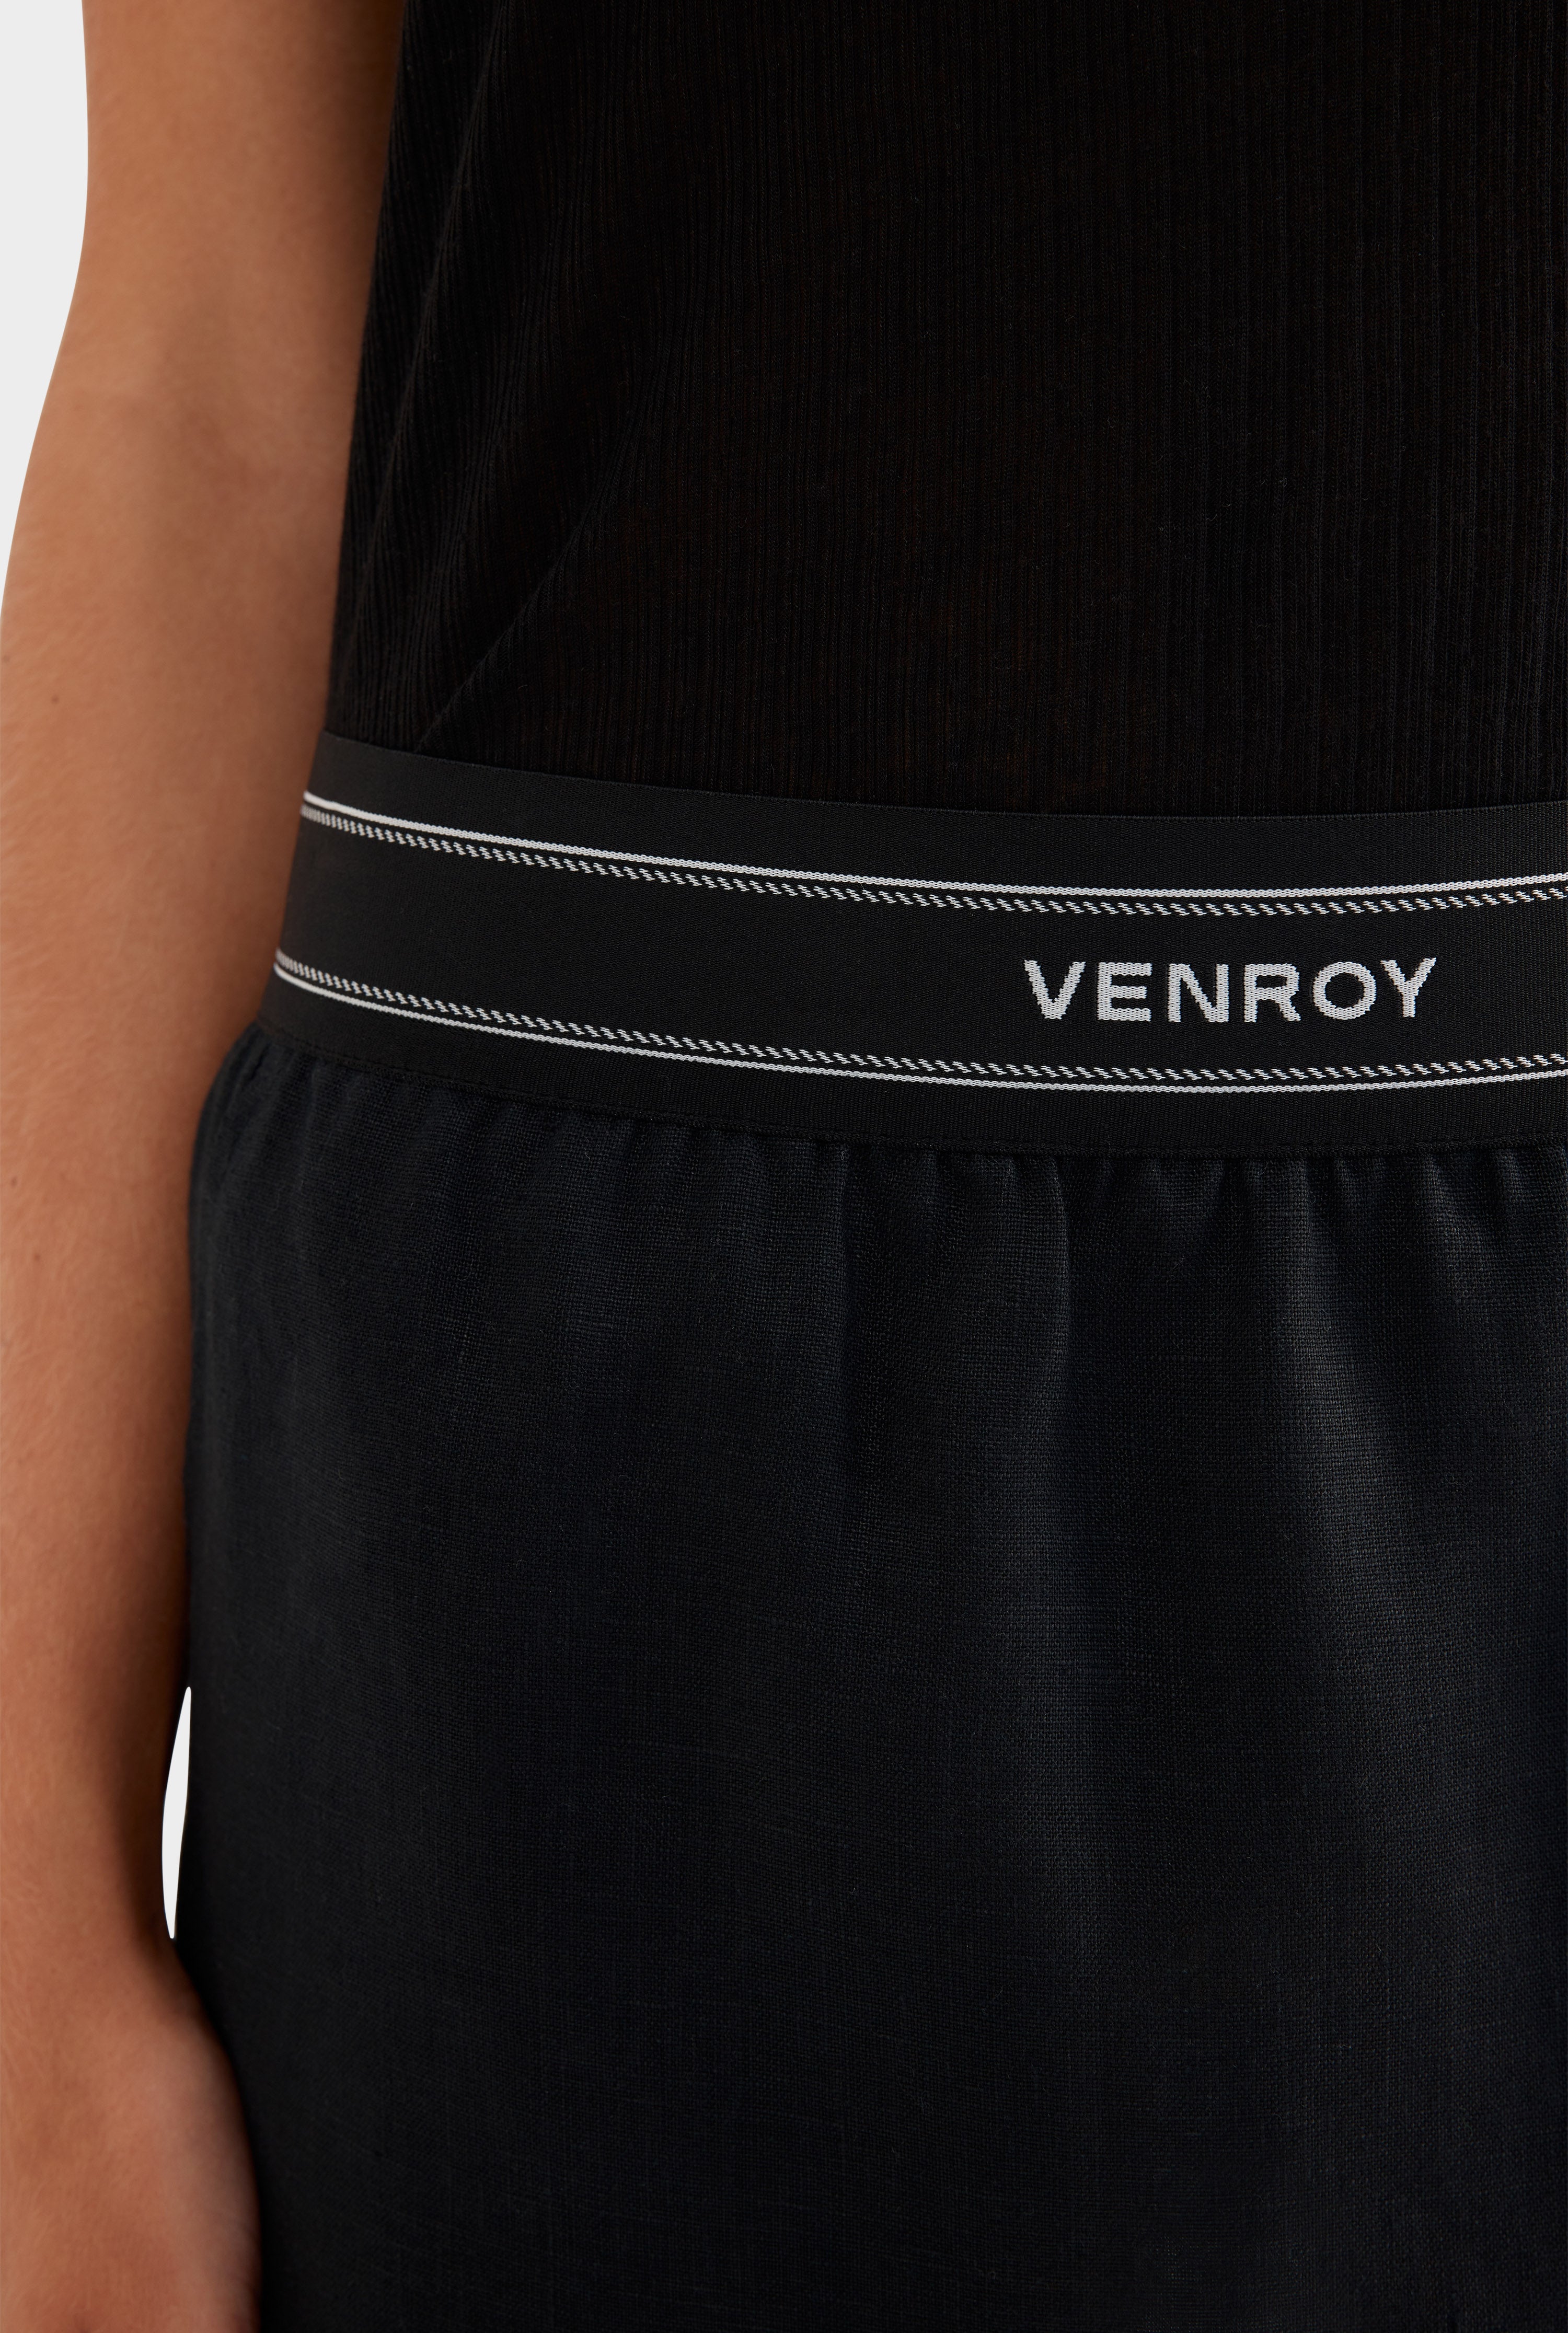 Lounge Skirt - Black/Venroy Logo